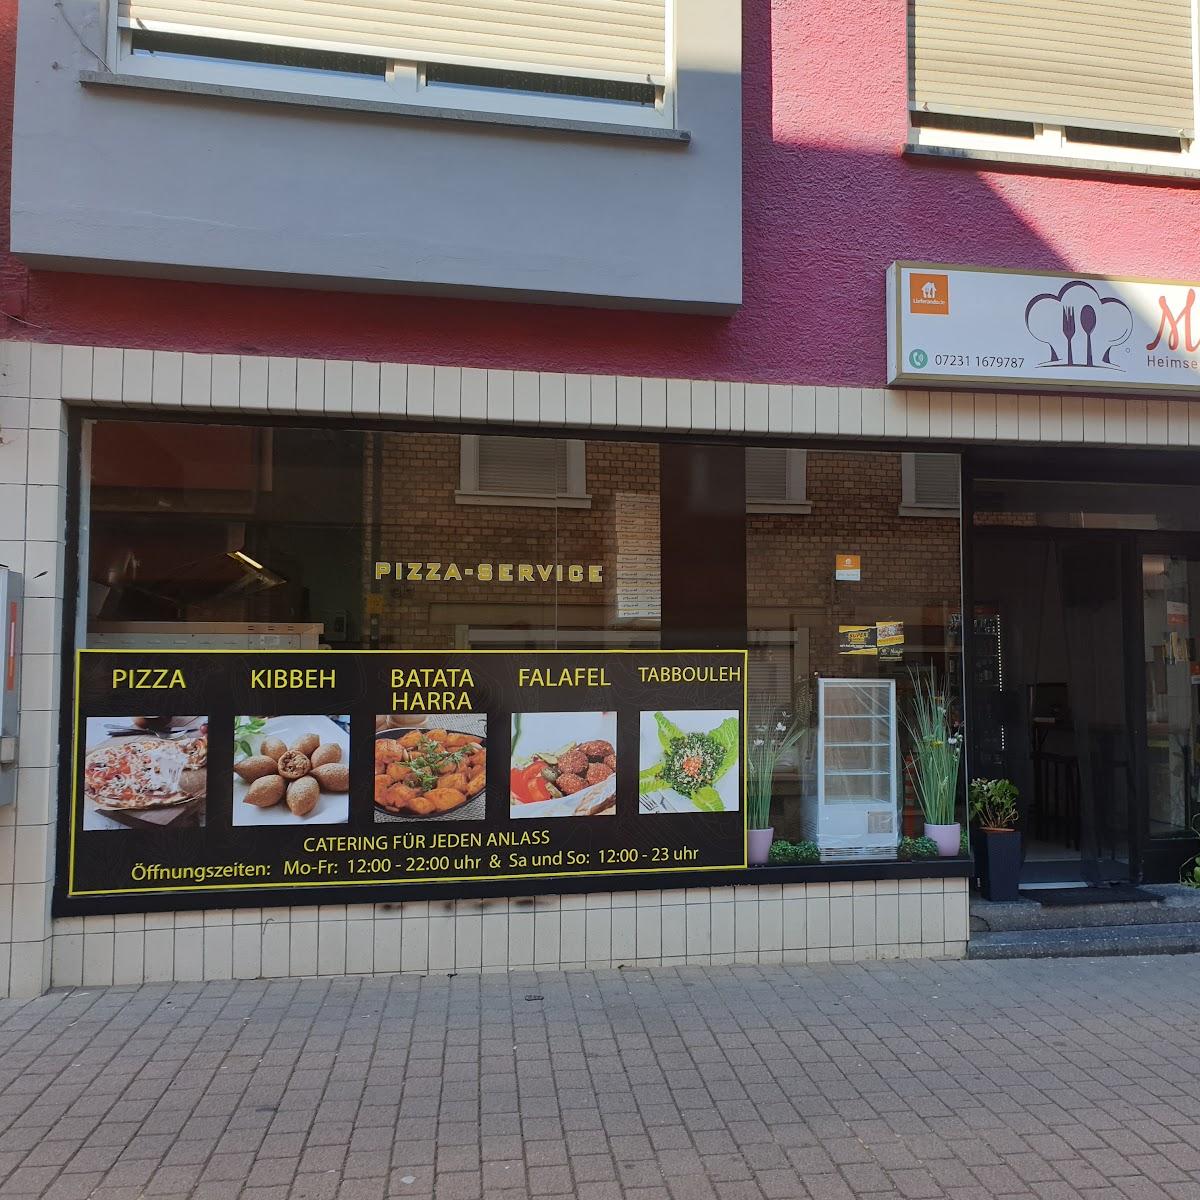 Restaurant "Pizza Maya Heimservice" in Ispringen